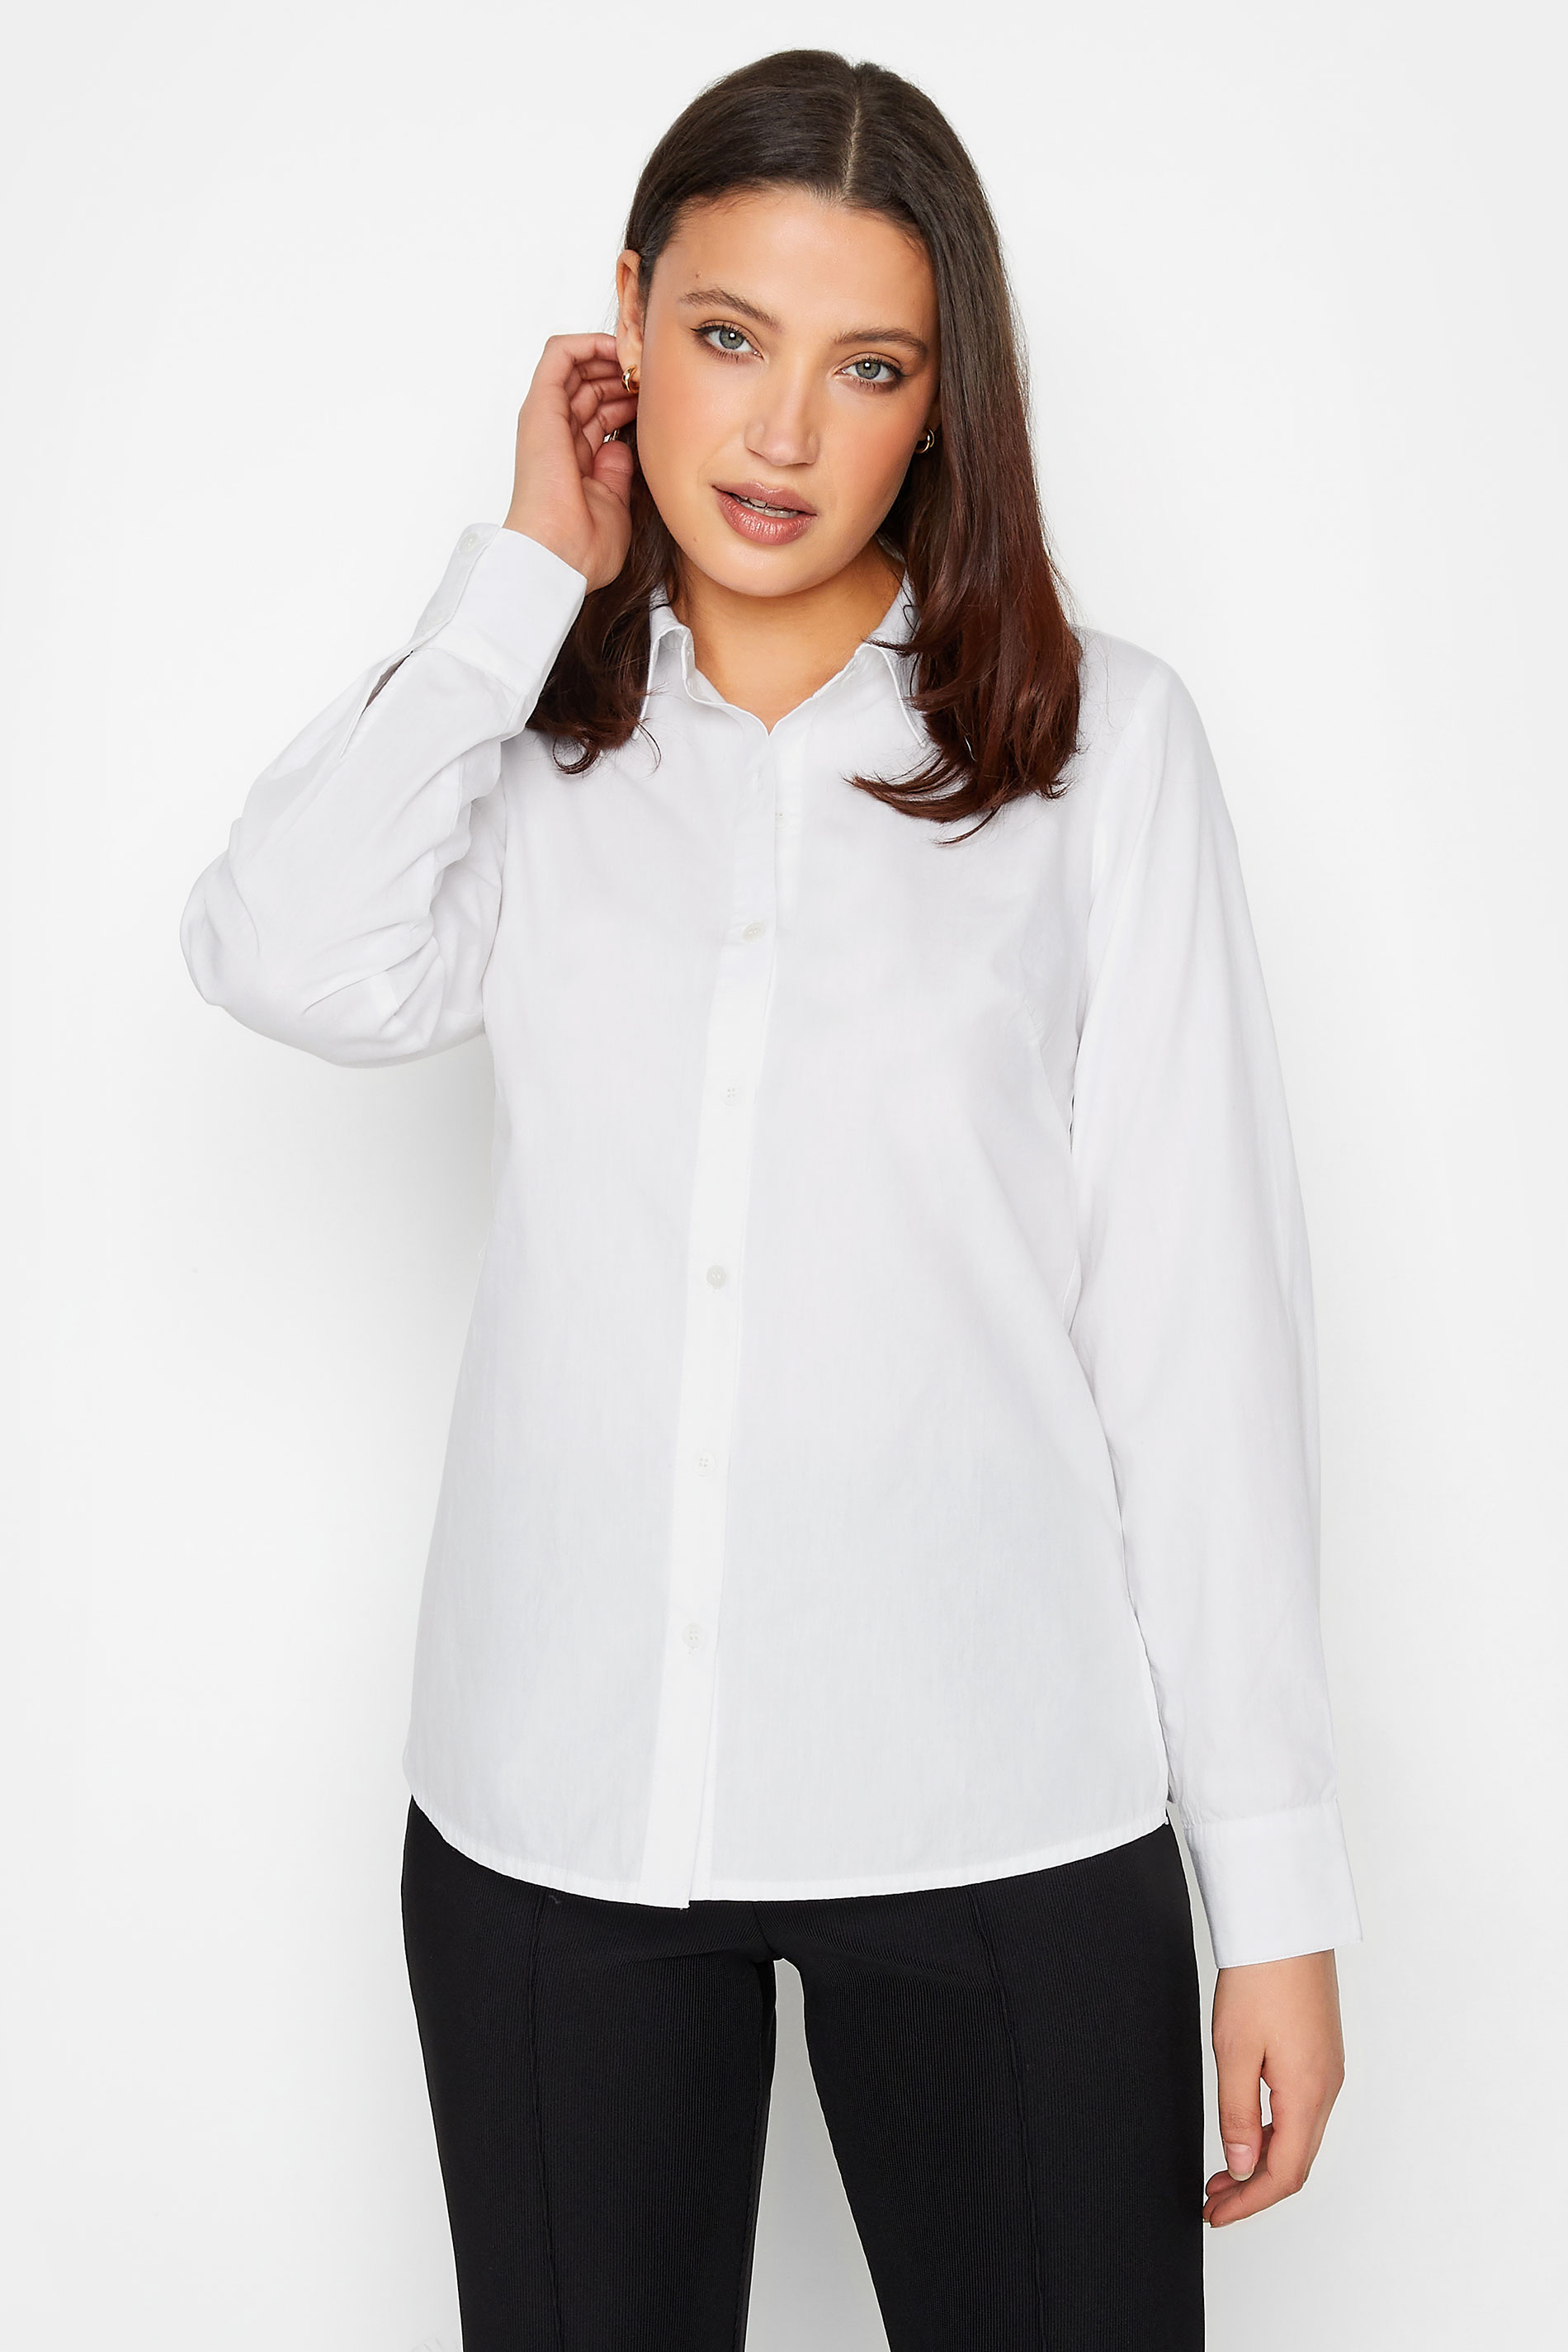 Tall Women's LTS White Cotton Shirt | Long Tall Sally